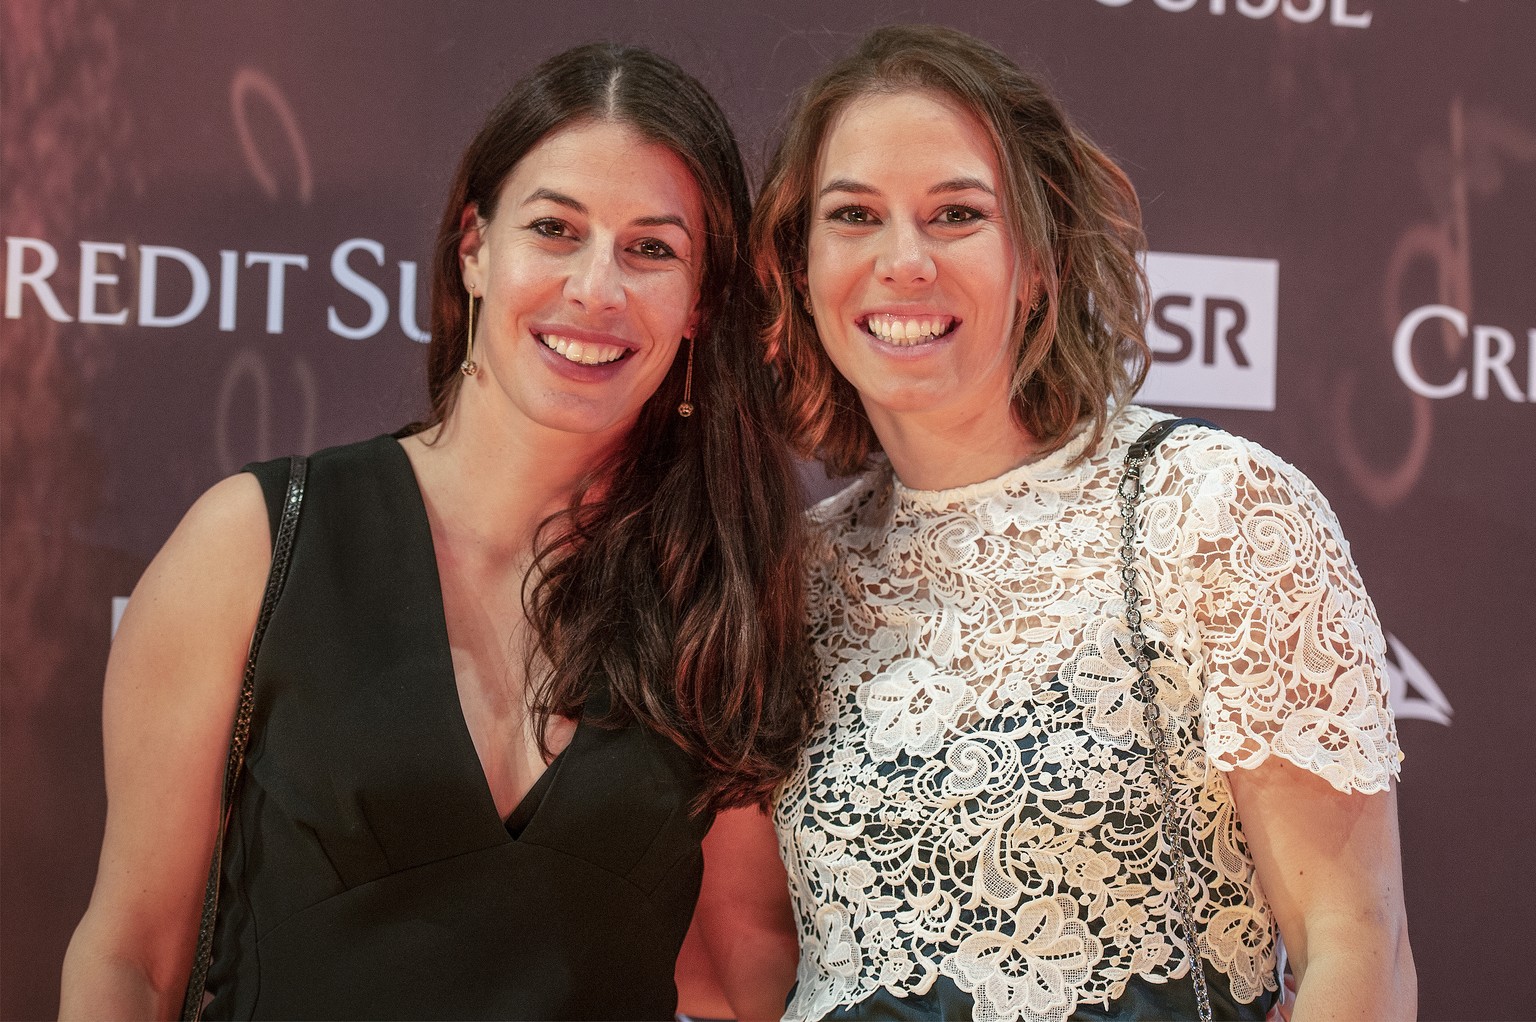 Die Geschwister Dominique, links, und Michelle Gisin, rechts, posieren auf dem goldenen Teppich an der Verleihung des Credit Suisse Sports Awards 2018, aufgenommen am Sonntag, 09. Dezember 2018, in Zu ...